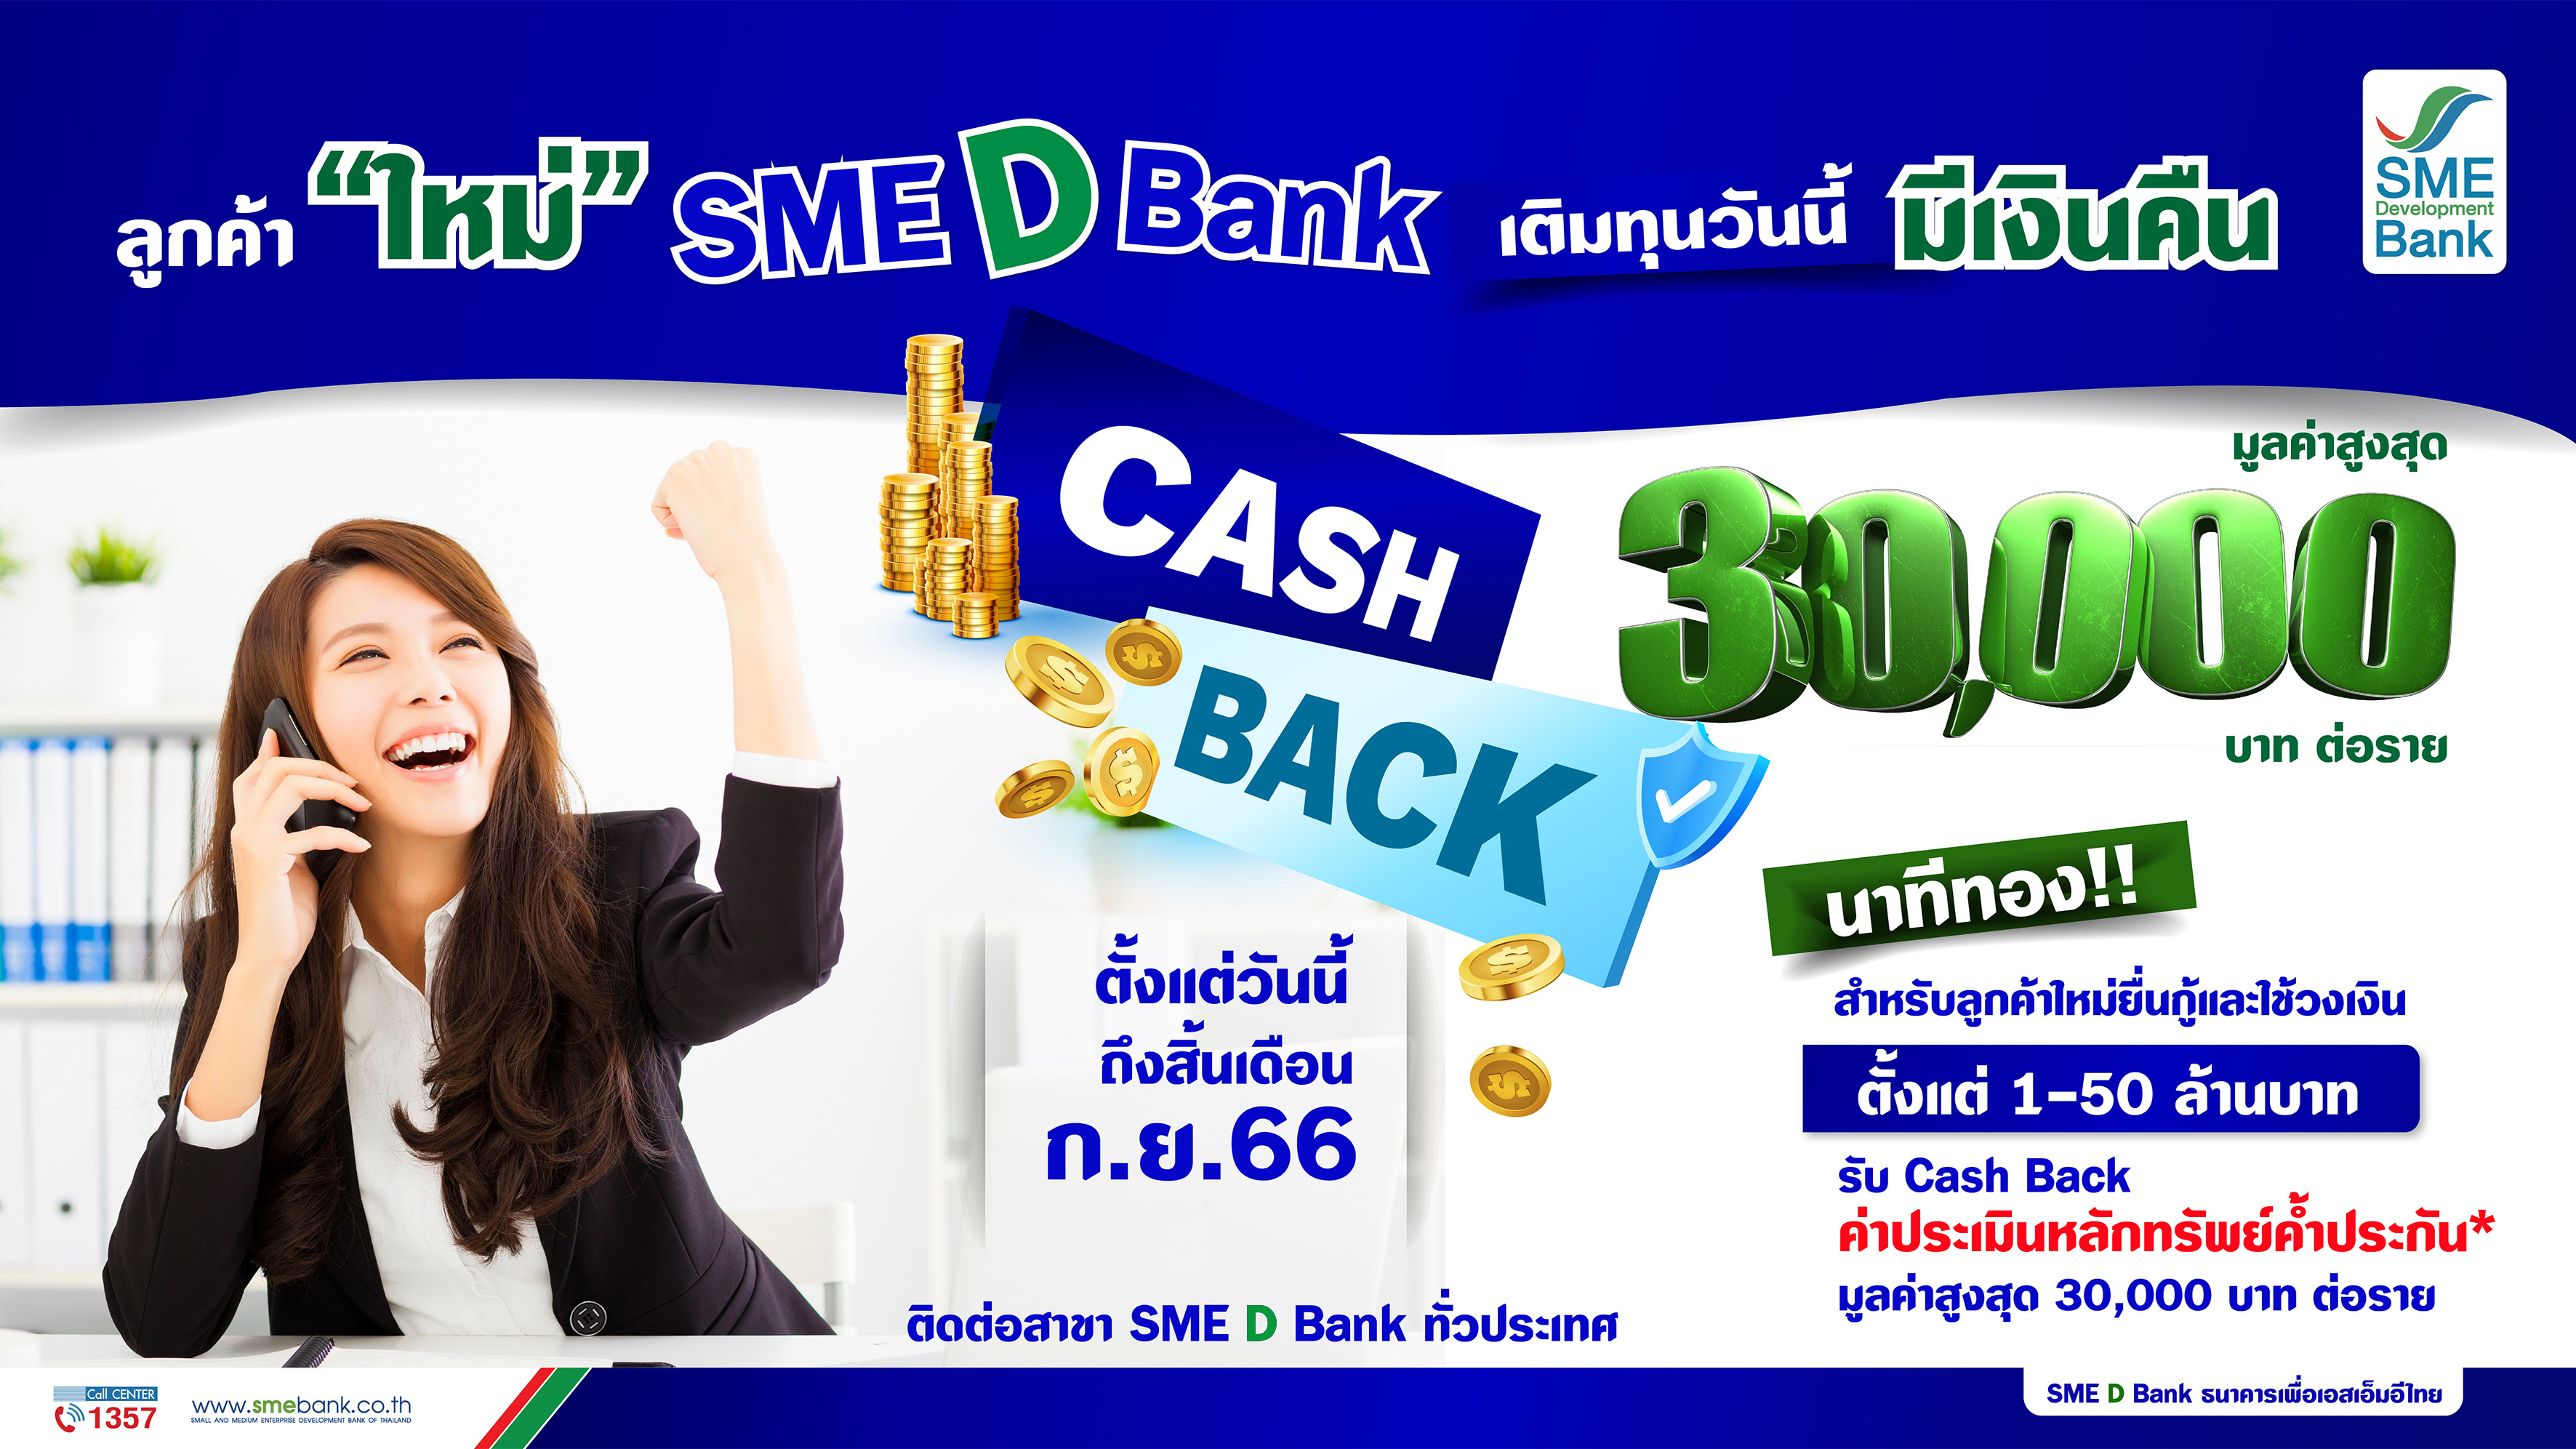 SME D Bank จัดแคมเปญพิเศษ เติมทุนรับCash Back ต้อนรับลูกค้าใหม่